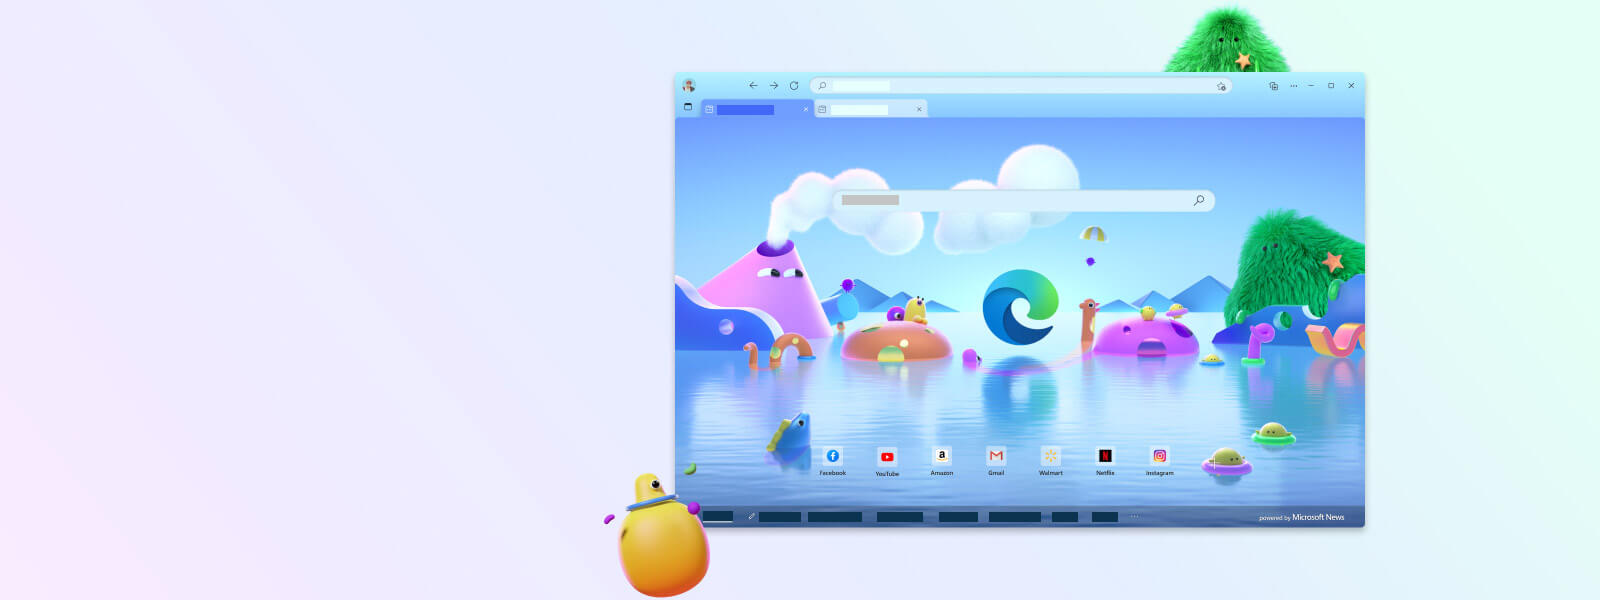 Obrazovka prohlížeče Microsoft Edge s různými kreslenými postavičkami pro dětský režim